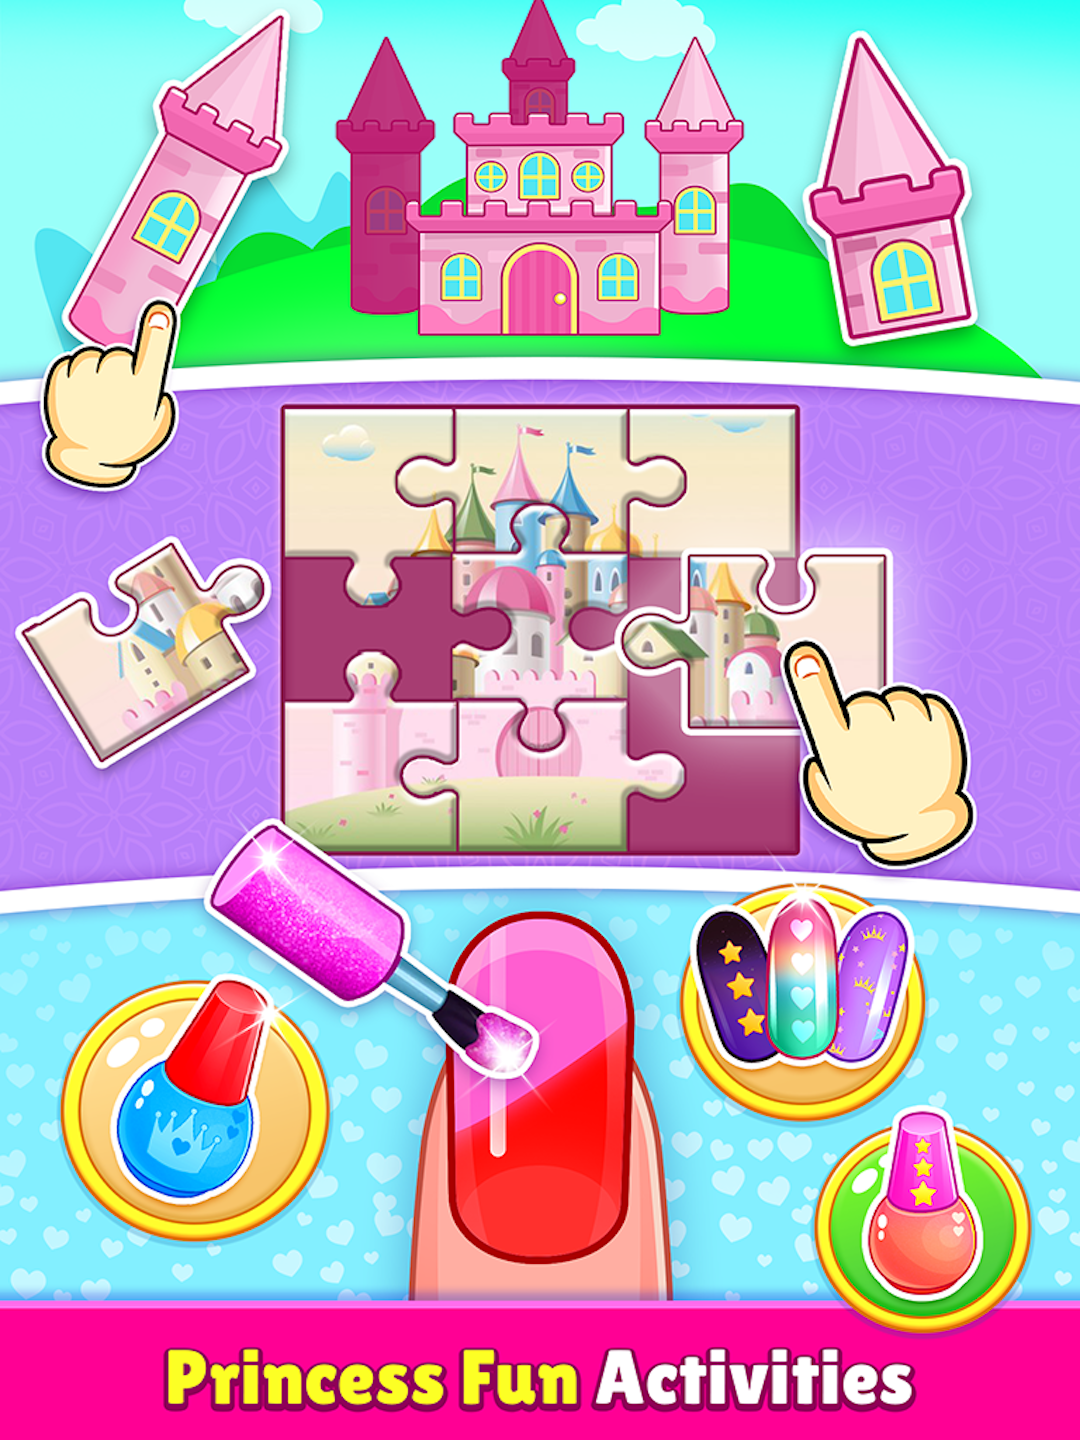 Screenshot of Princess Phone Games